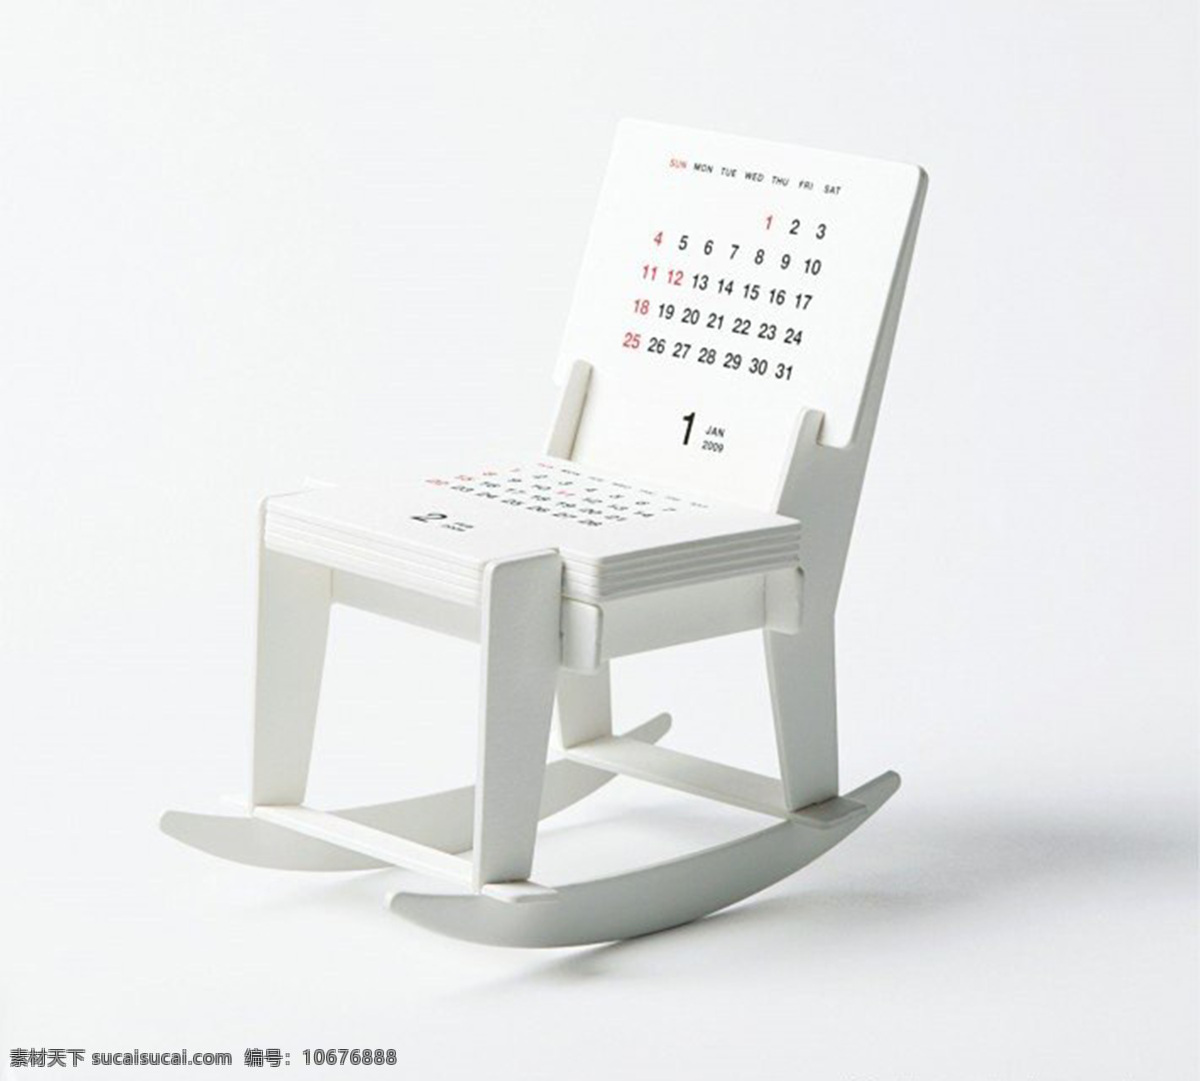 个性摇椅日历 产品设计 创意 凳子 个性 工业设计 家居 日历 生活 摇椅